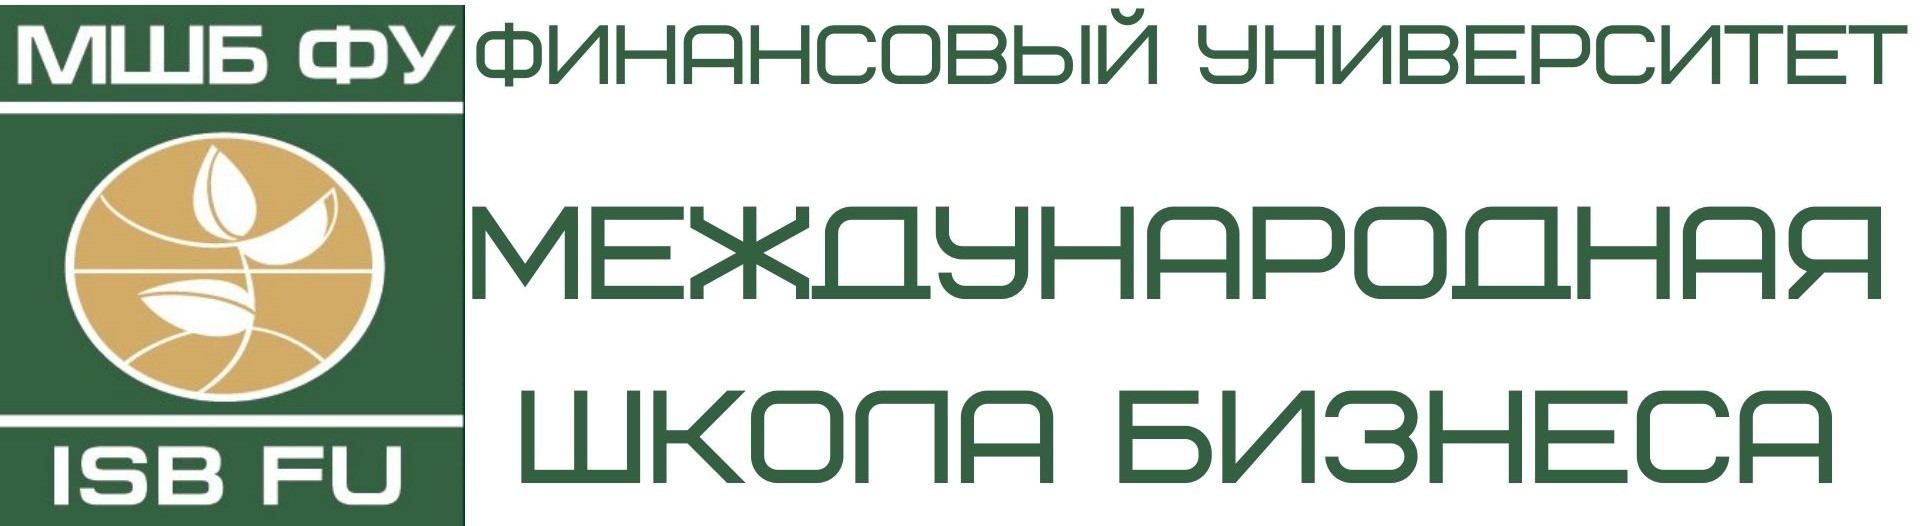 логотип МШБ ФУ.jpg